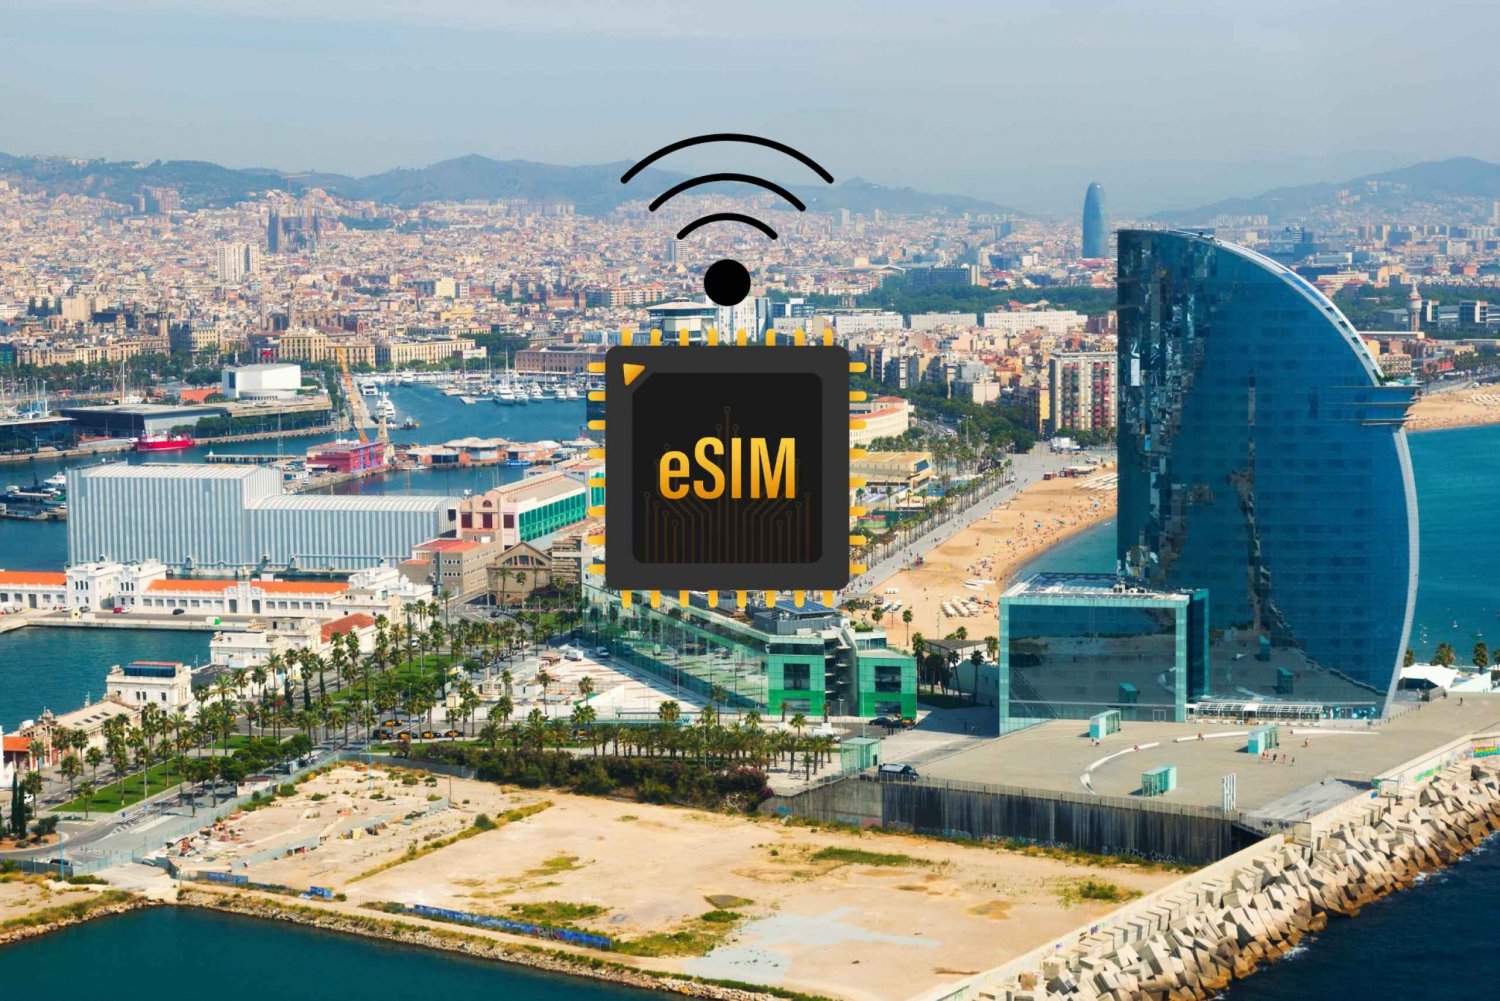 Barcelona: eSIM-Internet-Datentarif für Spanien high-speed 4G